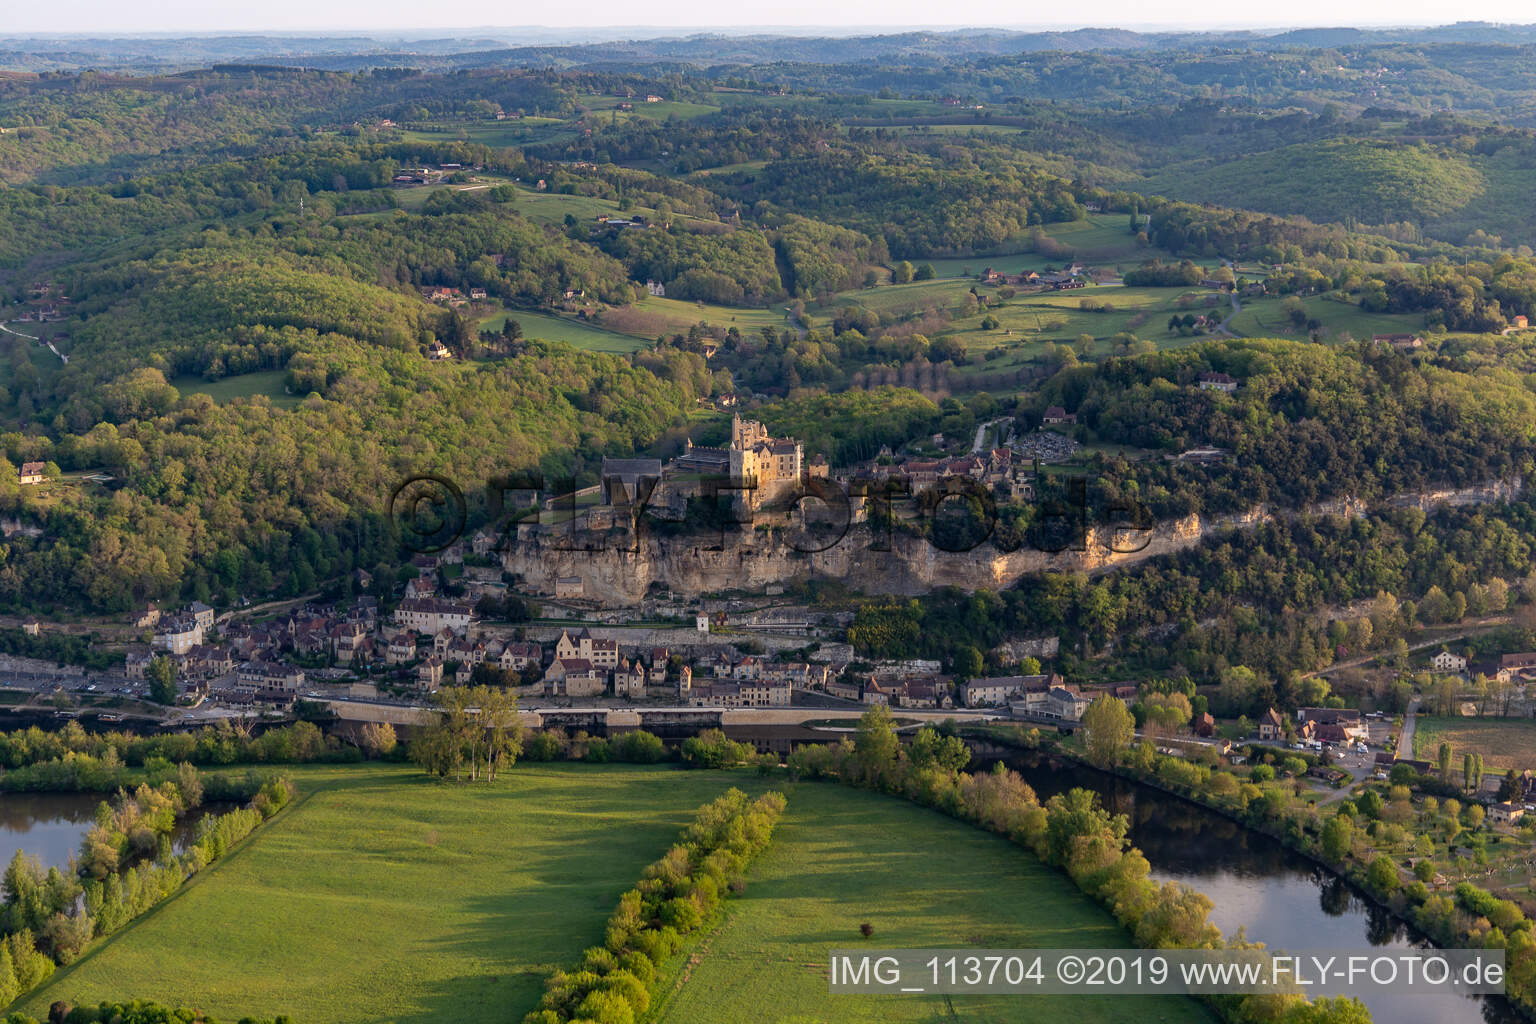 Chateau de Beynac in Beynac-et-Cazenac im Bundesland Dordogne, Frankreich aus der Luft betrachtet